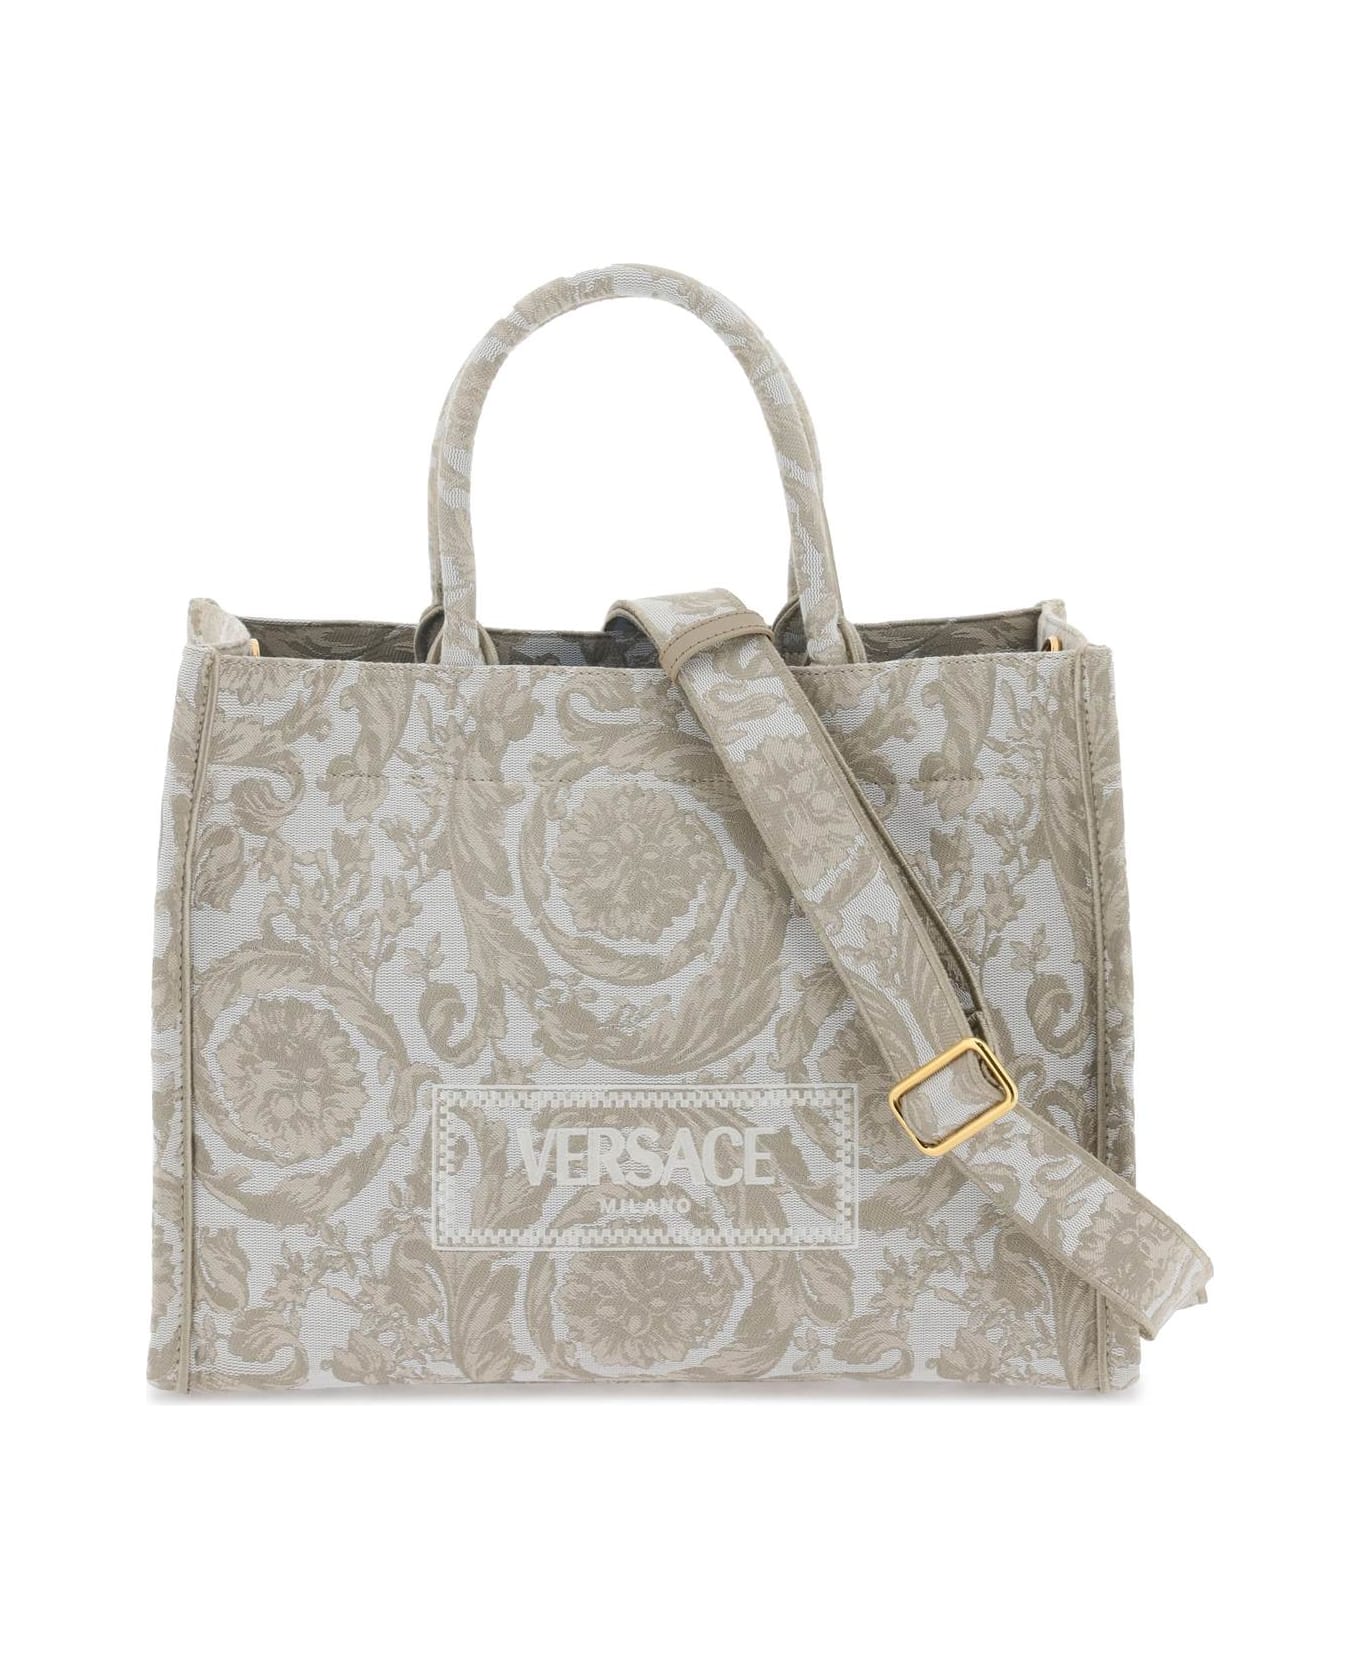 Versace Two-tone Fabric Bag - BEIGE BEIGE VERSACE GOLD トートバッグ